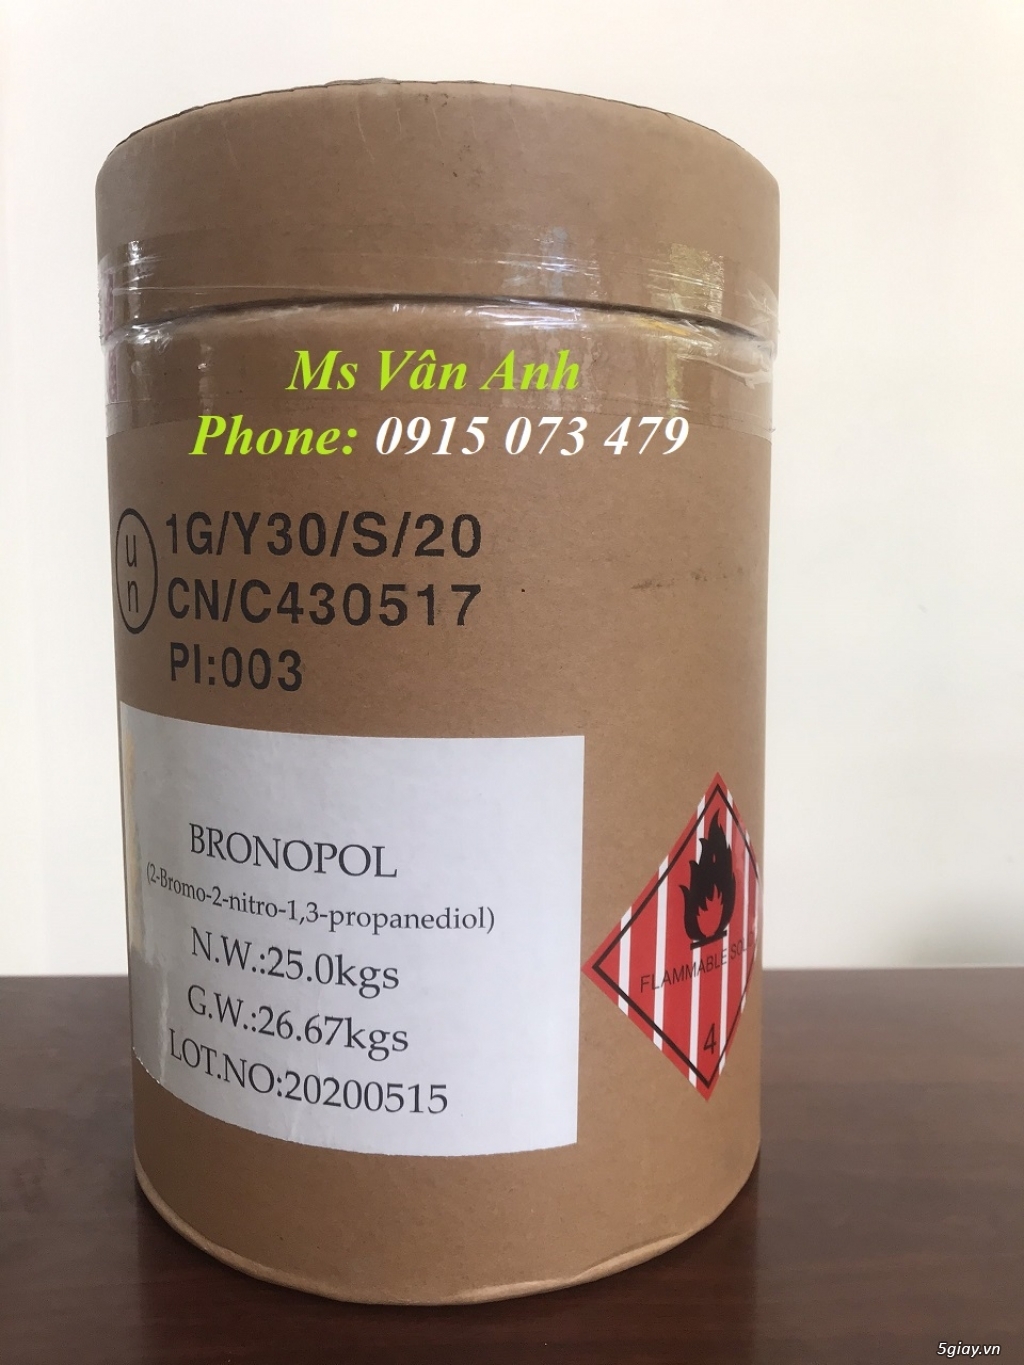 Cung cấp Bronopol hàng Mỹ chuyên trị nấm, diệt khuẩn giá tốt nhất